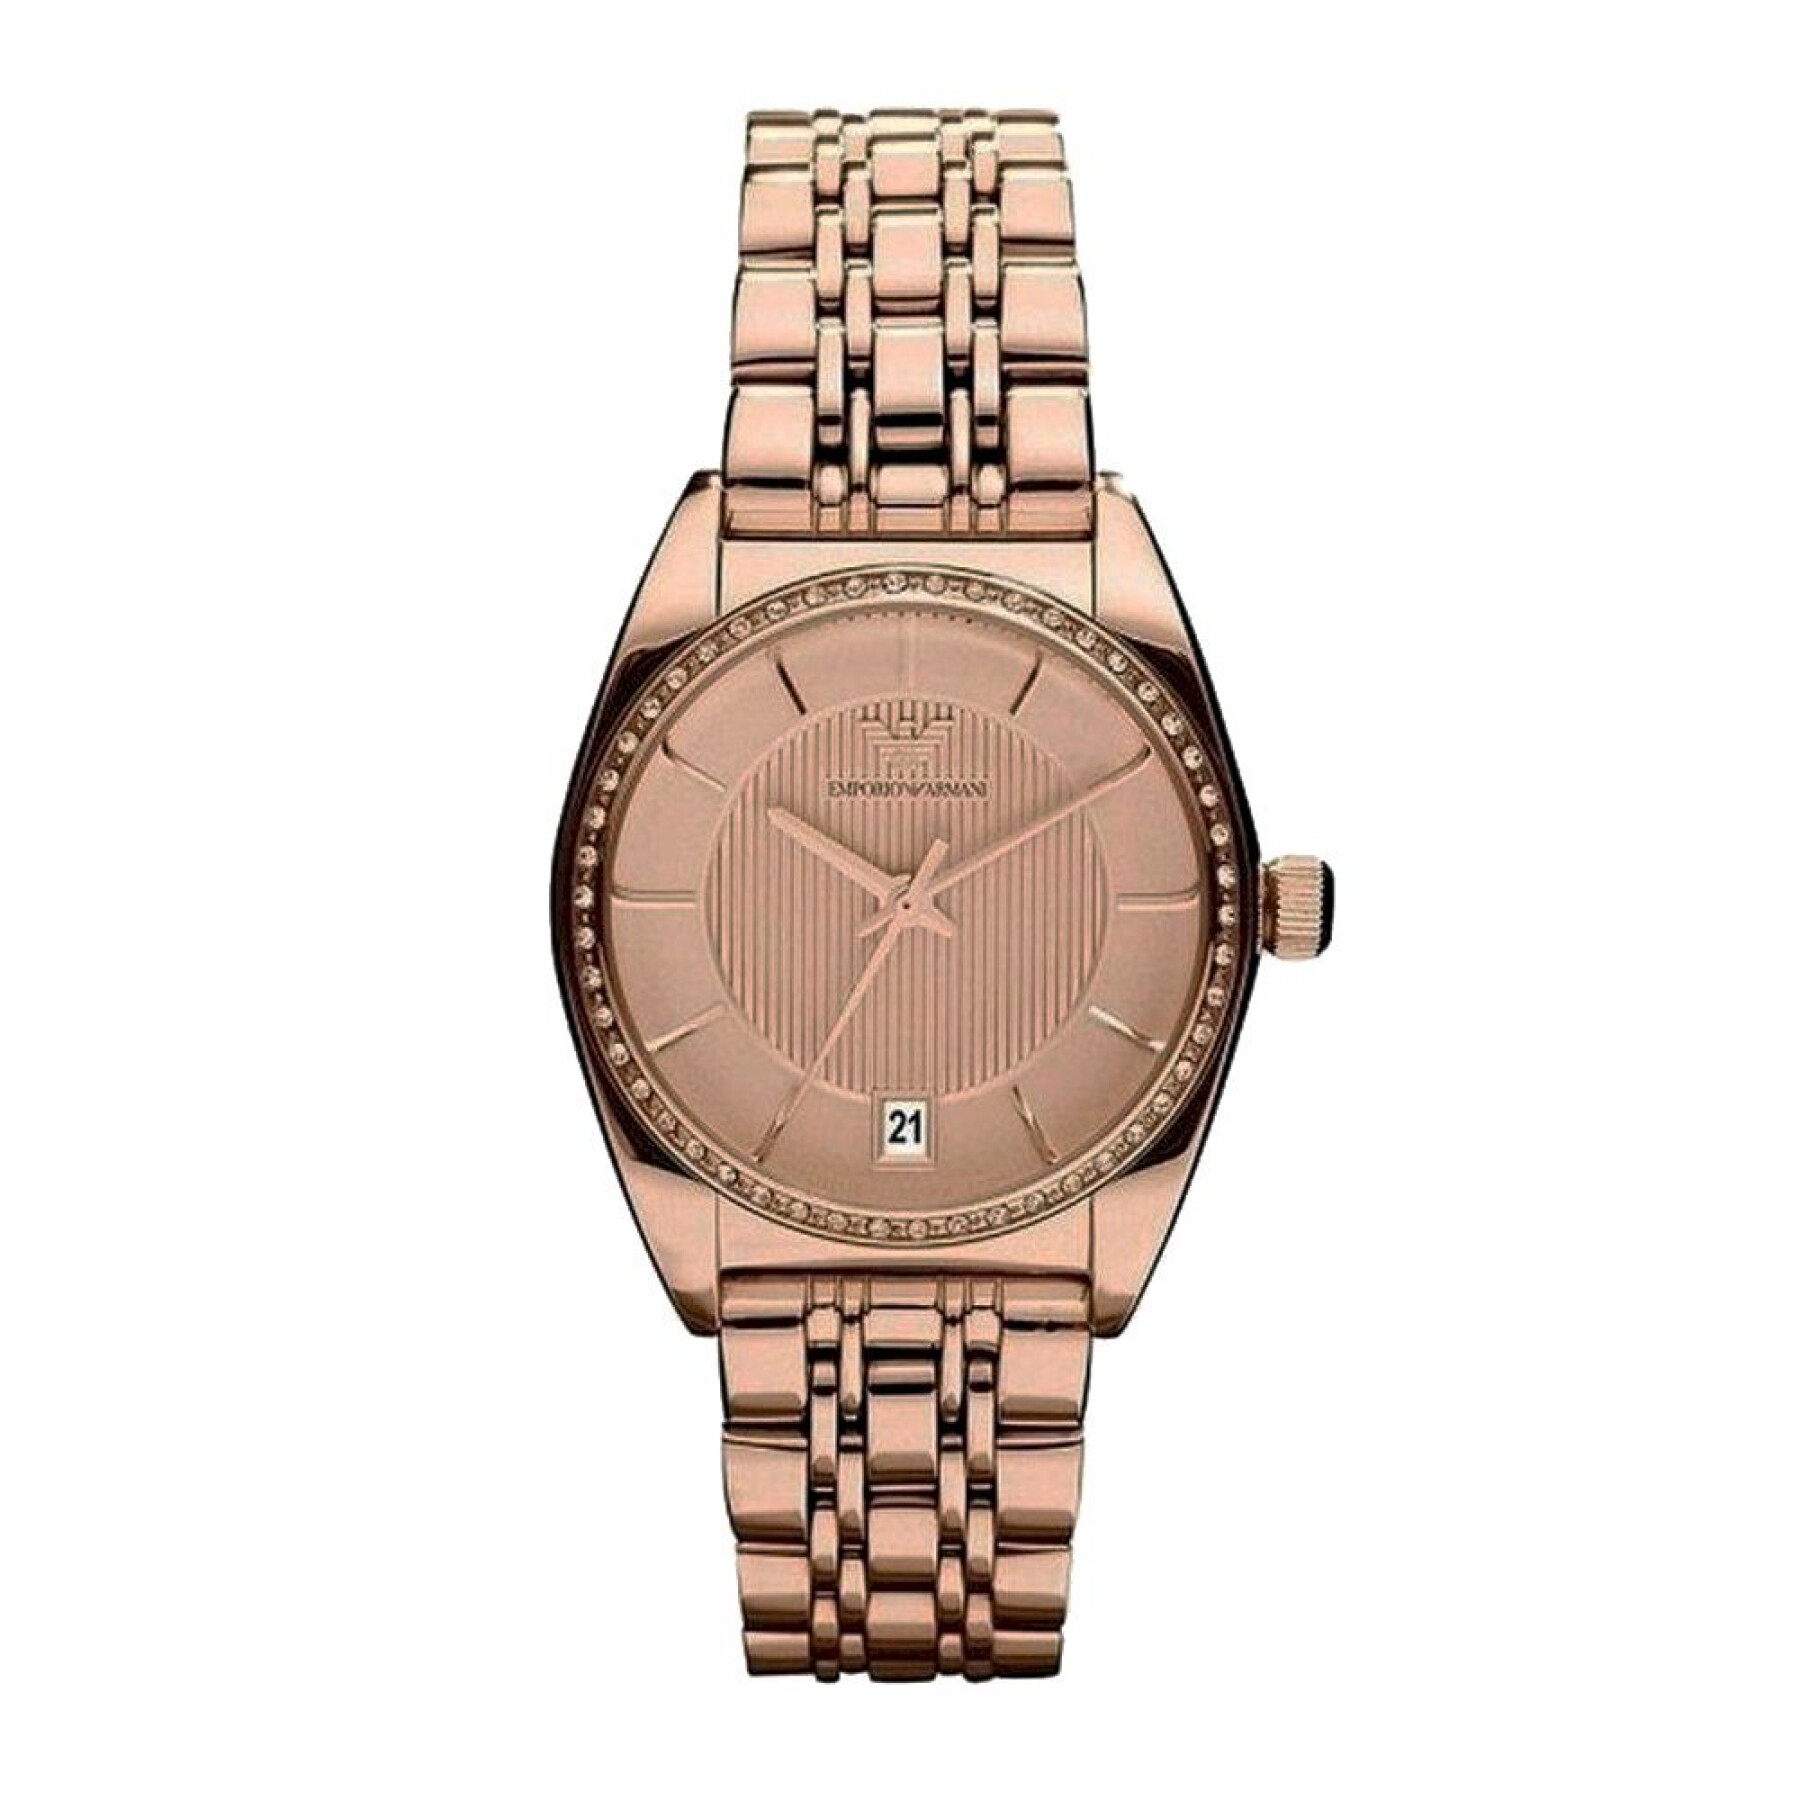 Women's watch Armani AR0381